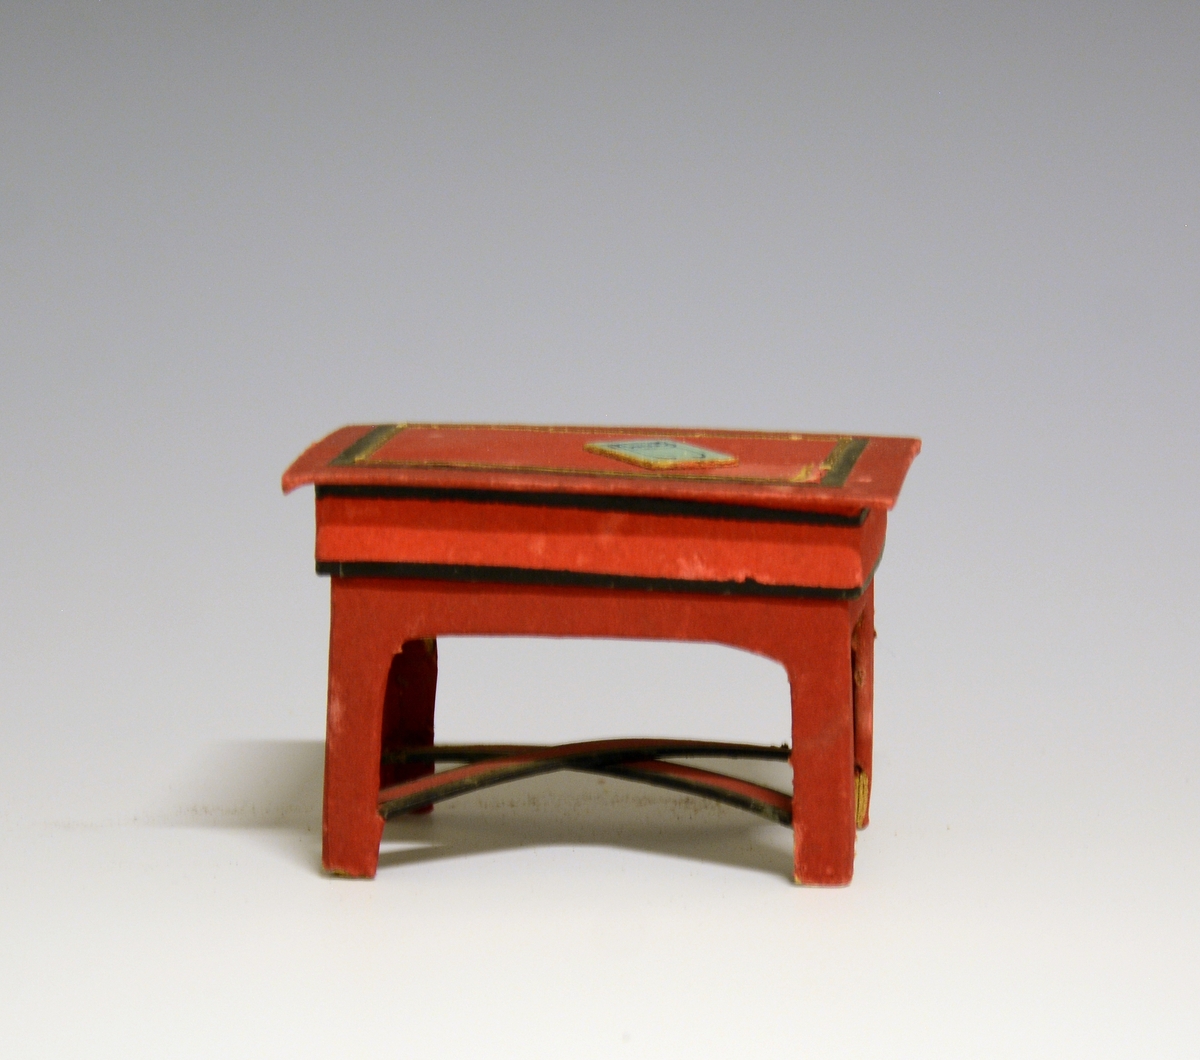 Prot: Møblement i papp, bestående av A - sofa, B - bord, C - skrivebord, D - piano (noe defekt), E - stol (mangler tre ben som ligger i Deleskuffen)